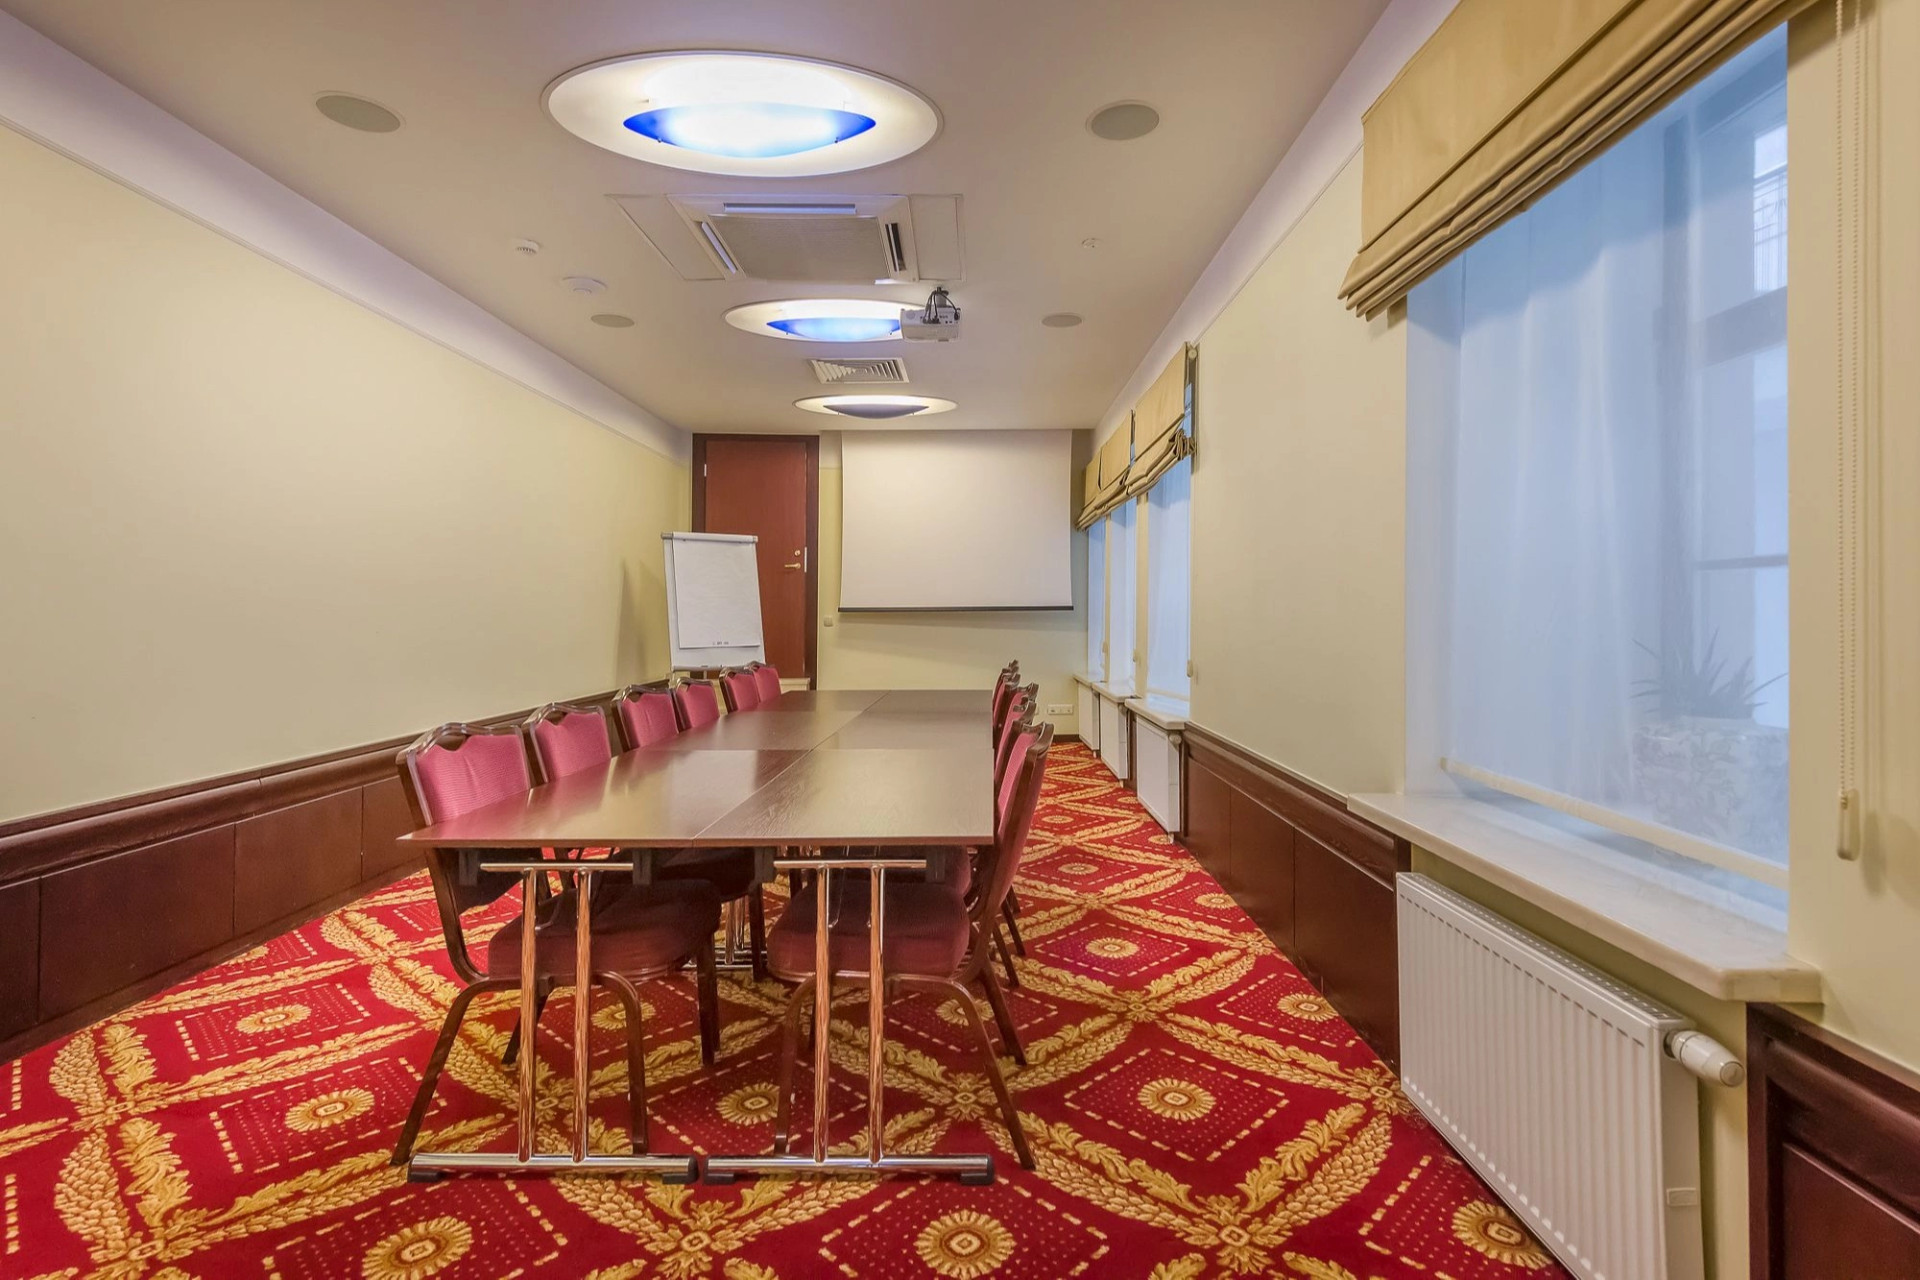 Conference rooms | Vilnius | Artis Centrum Hotels | picture